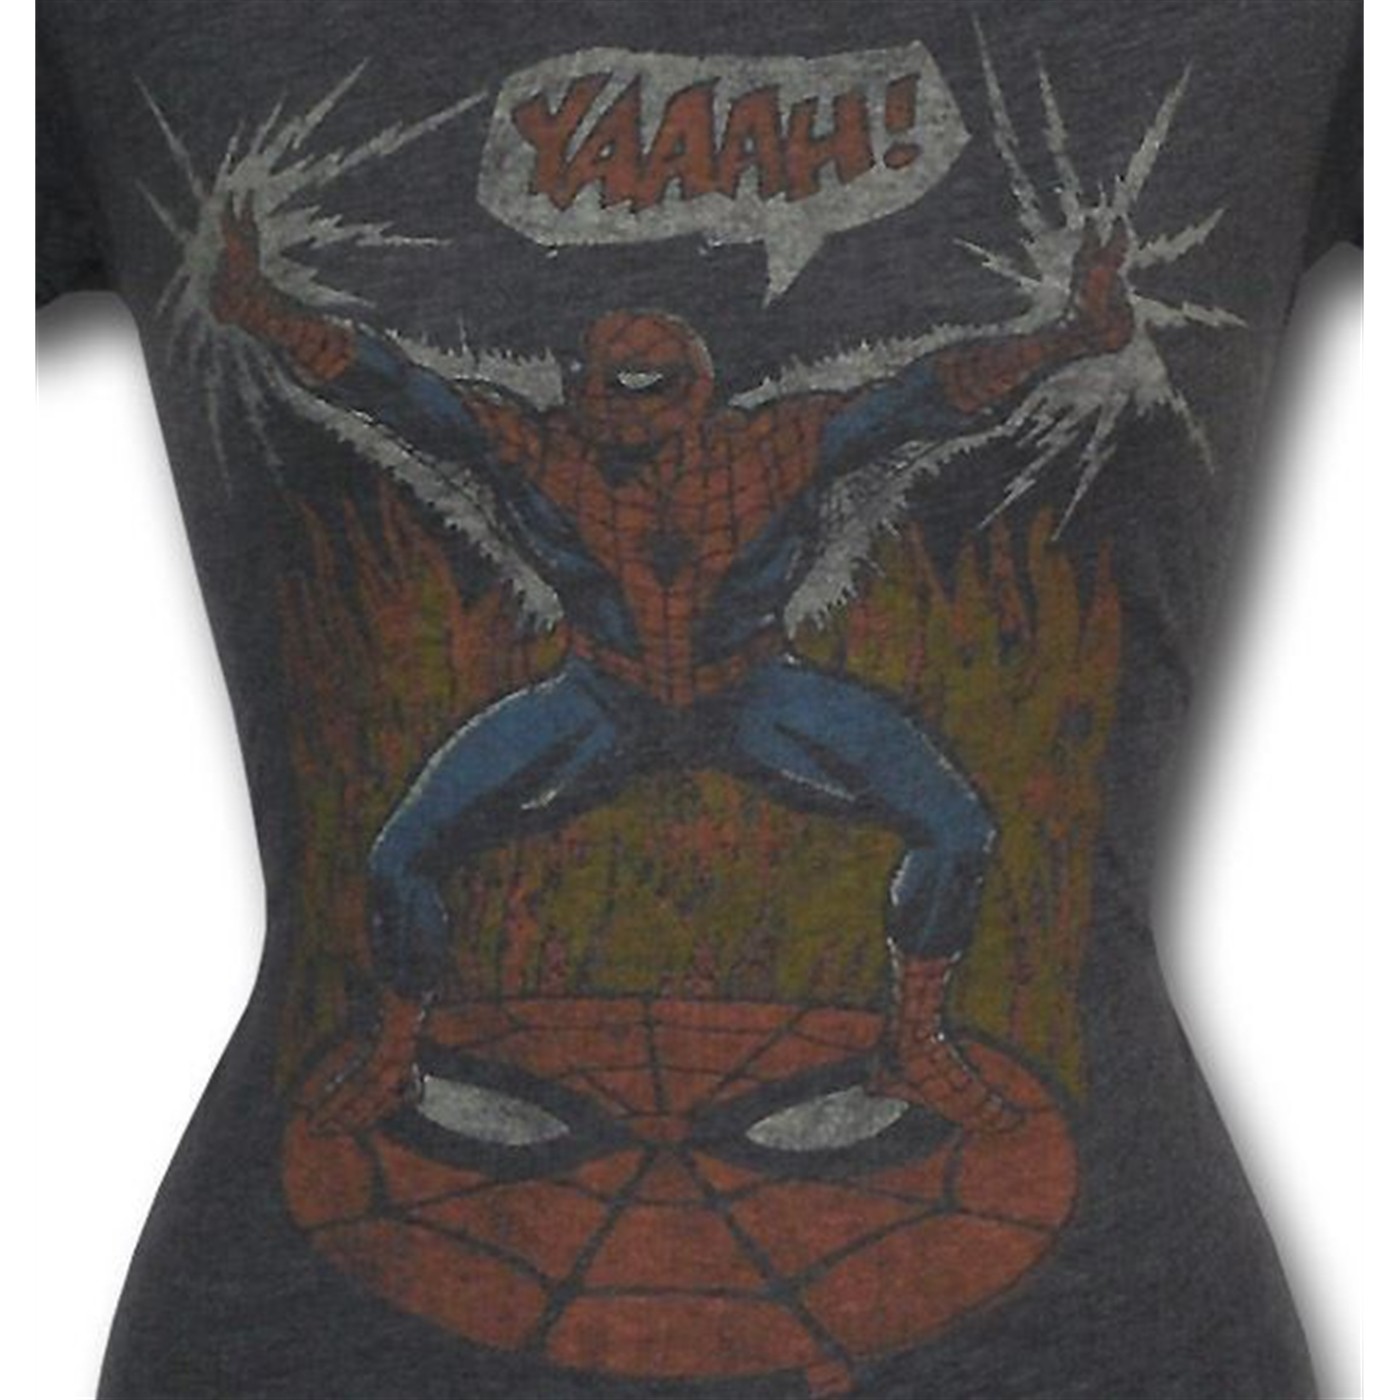 Spiderman YAAAH! Jr Womens Junk Food T-Shirt